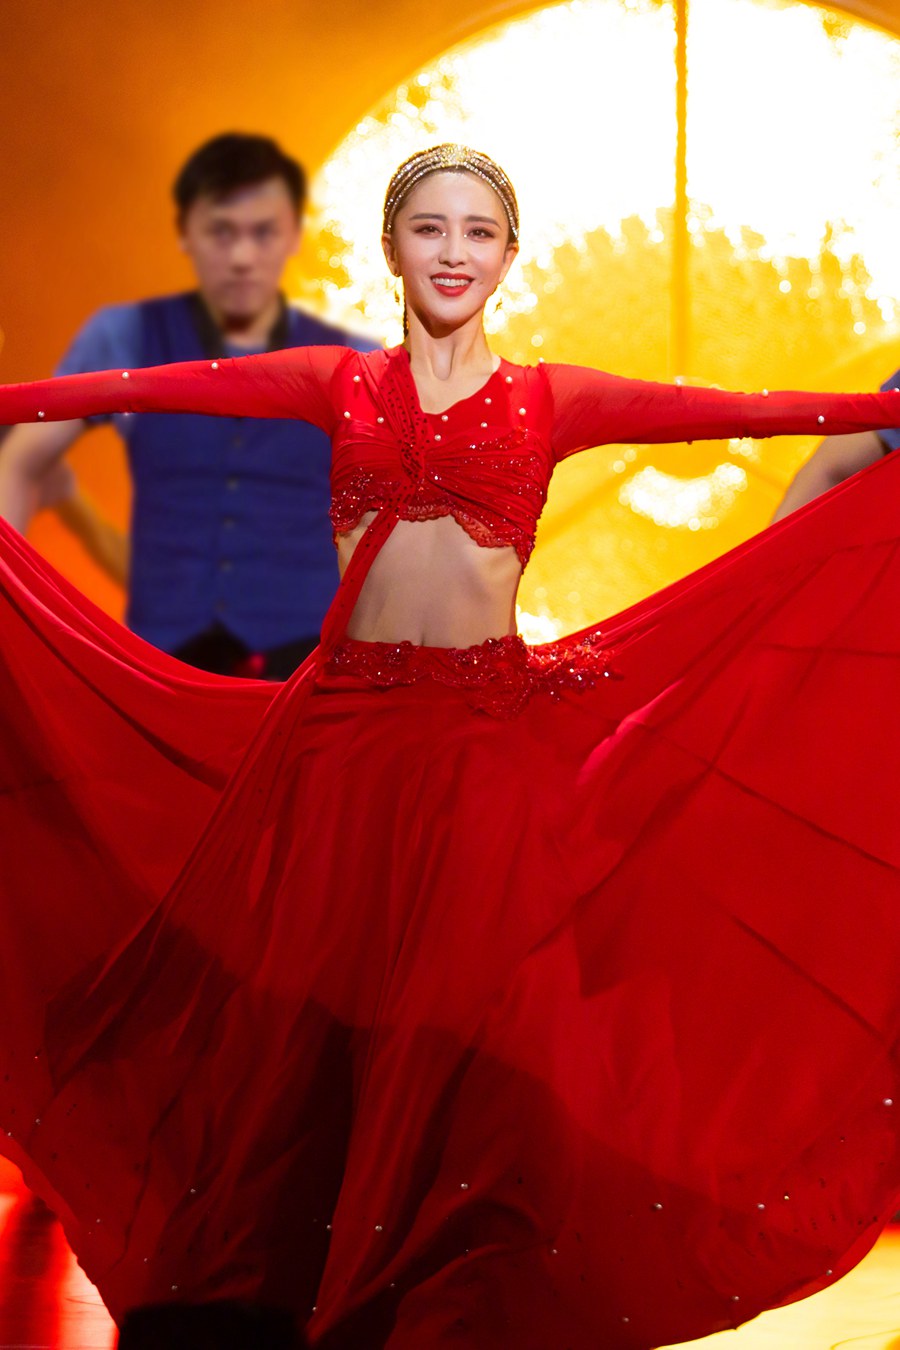 佟丽娅 《舞蹈生》导师大秀烈焰红纱裙迷人奔放